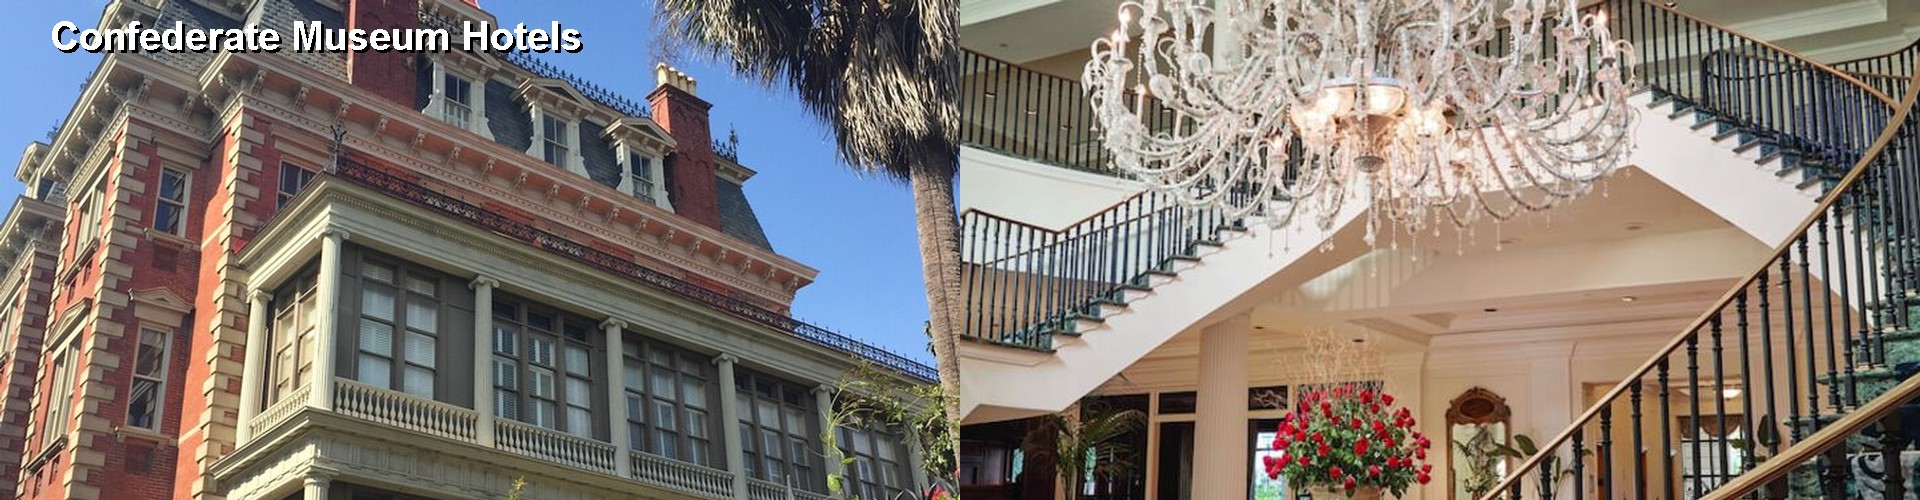 5 Best Hotels near Confederate Museum